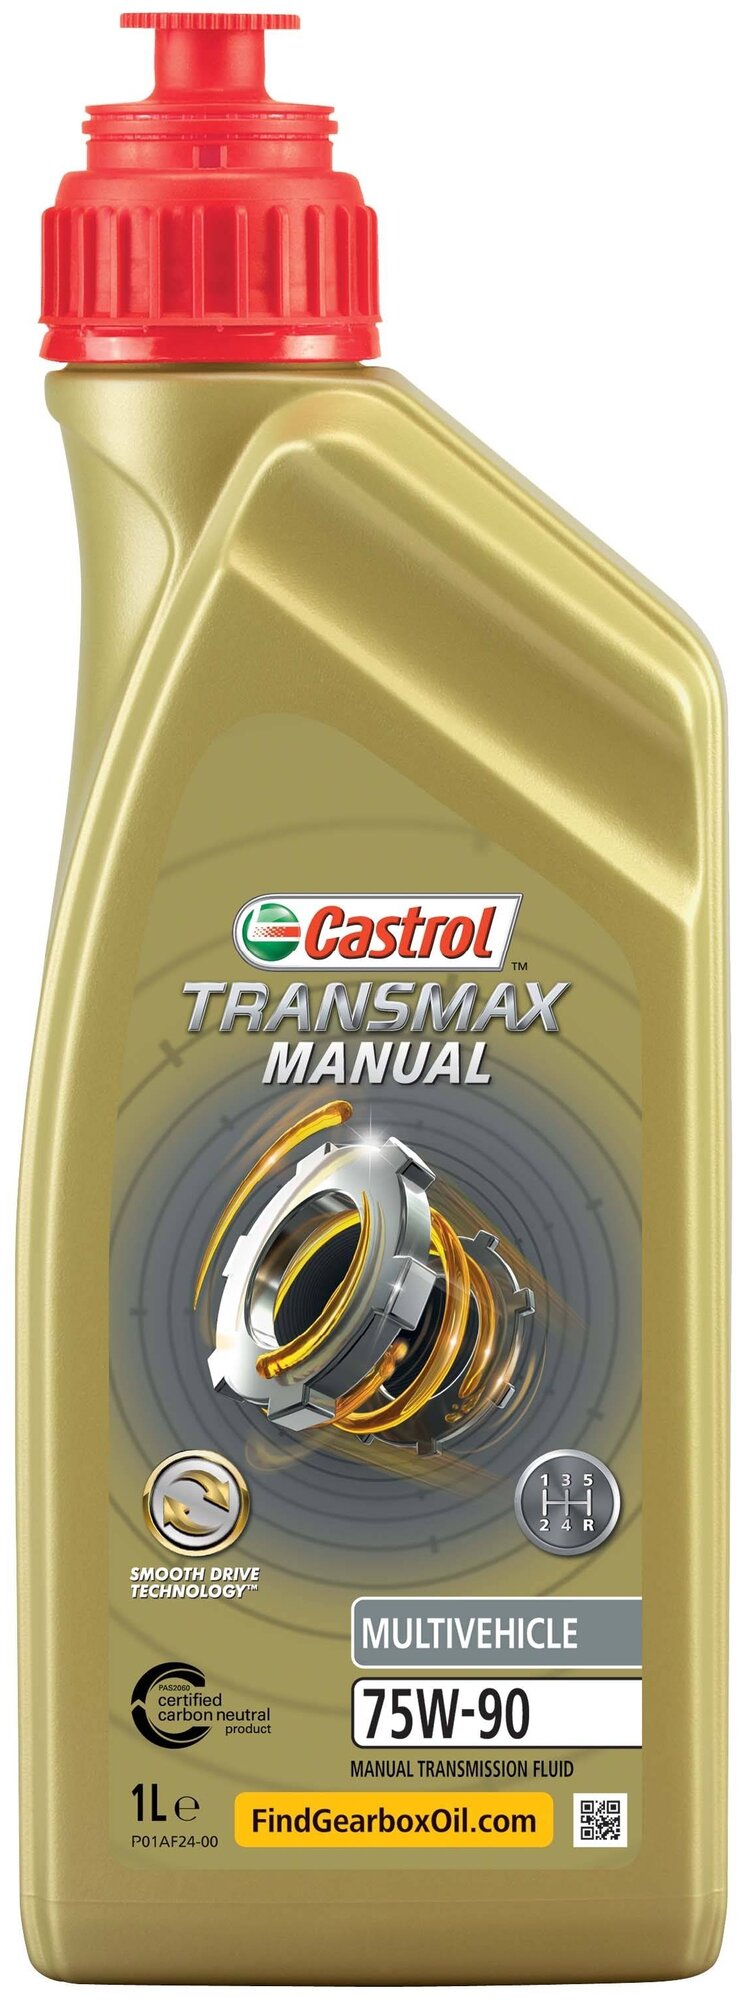 Масло Трансмиссионное Castrol Transmax Manual Multivehicle 75w-90 1 Л 15d816 Castrol арт. 15D816